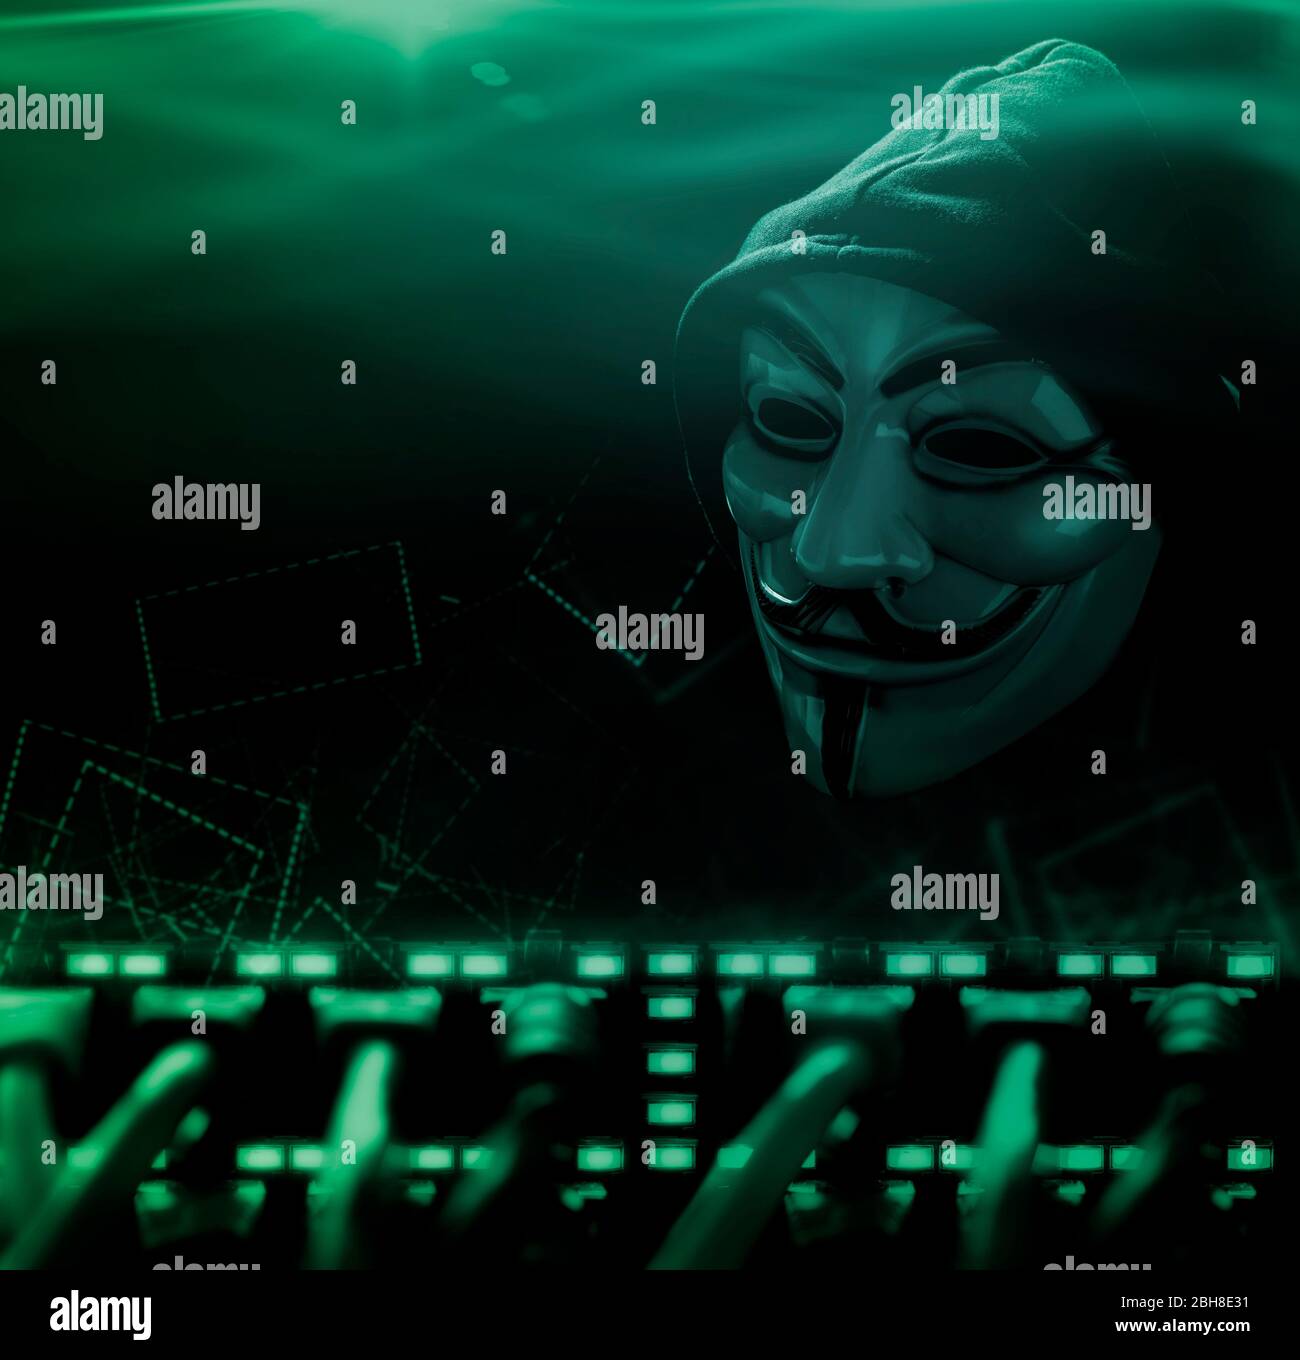 Anonymer Computerhacker mit Maske und Kapuze Stock Photo